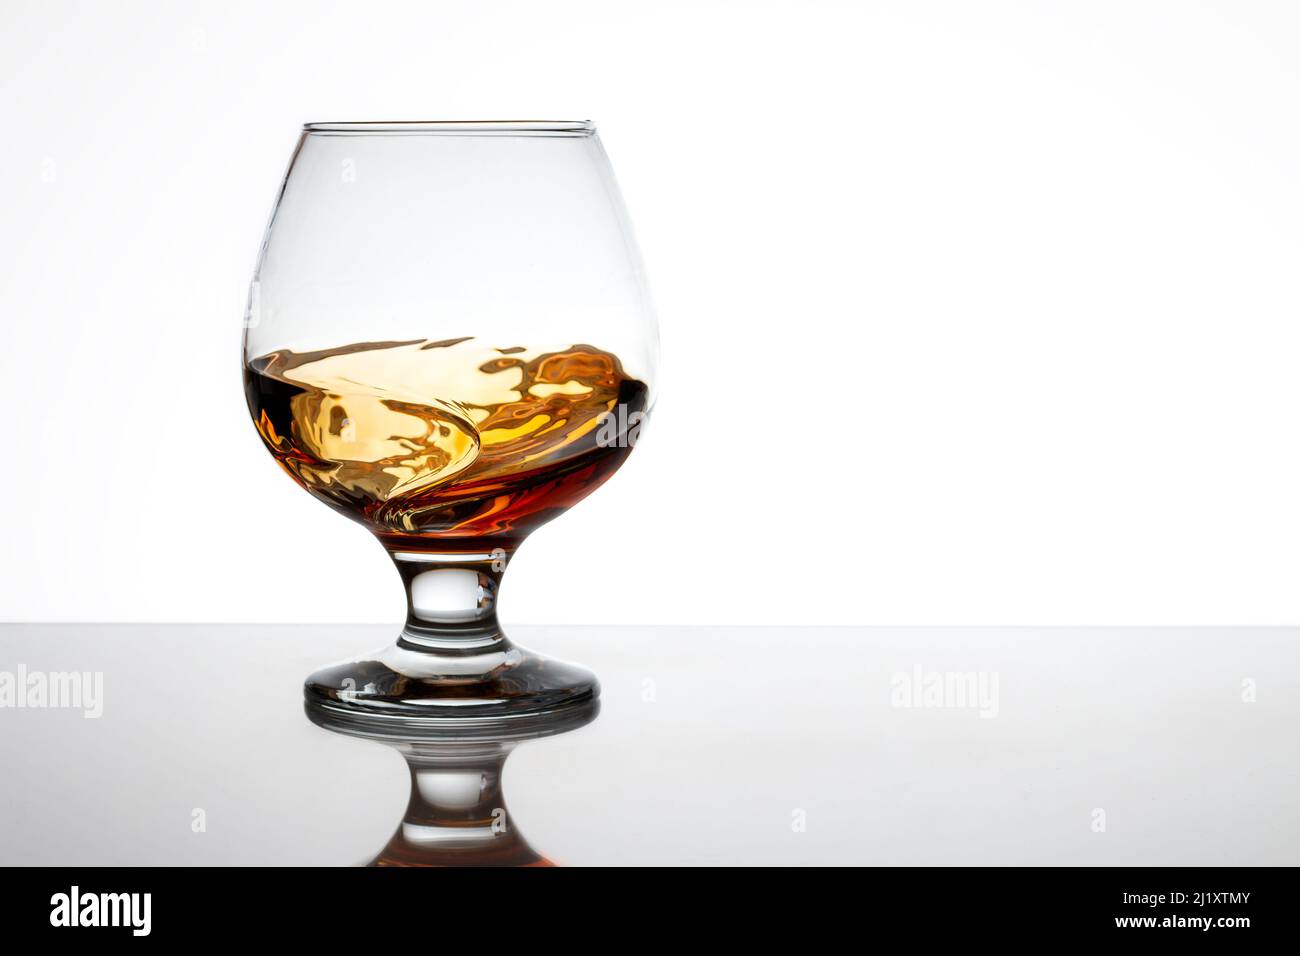 Ein Glas Brandy in Bewegung, das sehr attraktive Wellen bildet. Der Hintergrund ist weiß und der Glasboden wird auf der Oberfläche reflektiert. Stockfoto